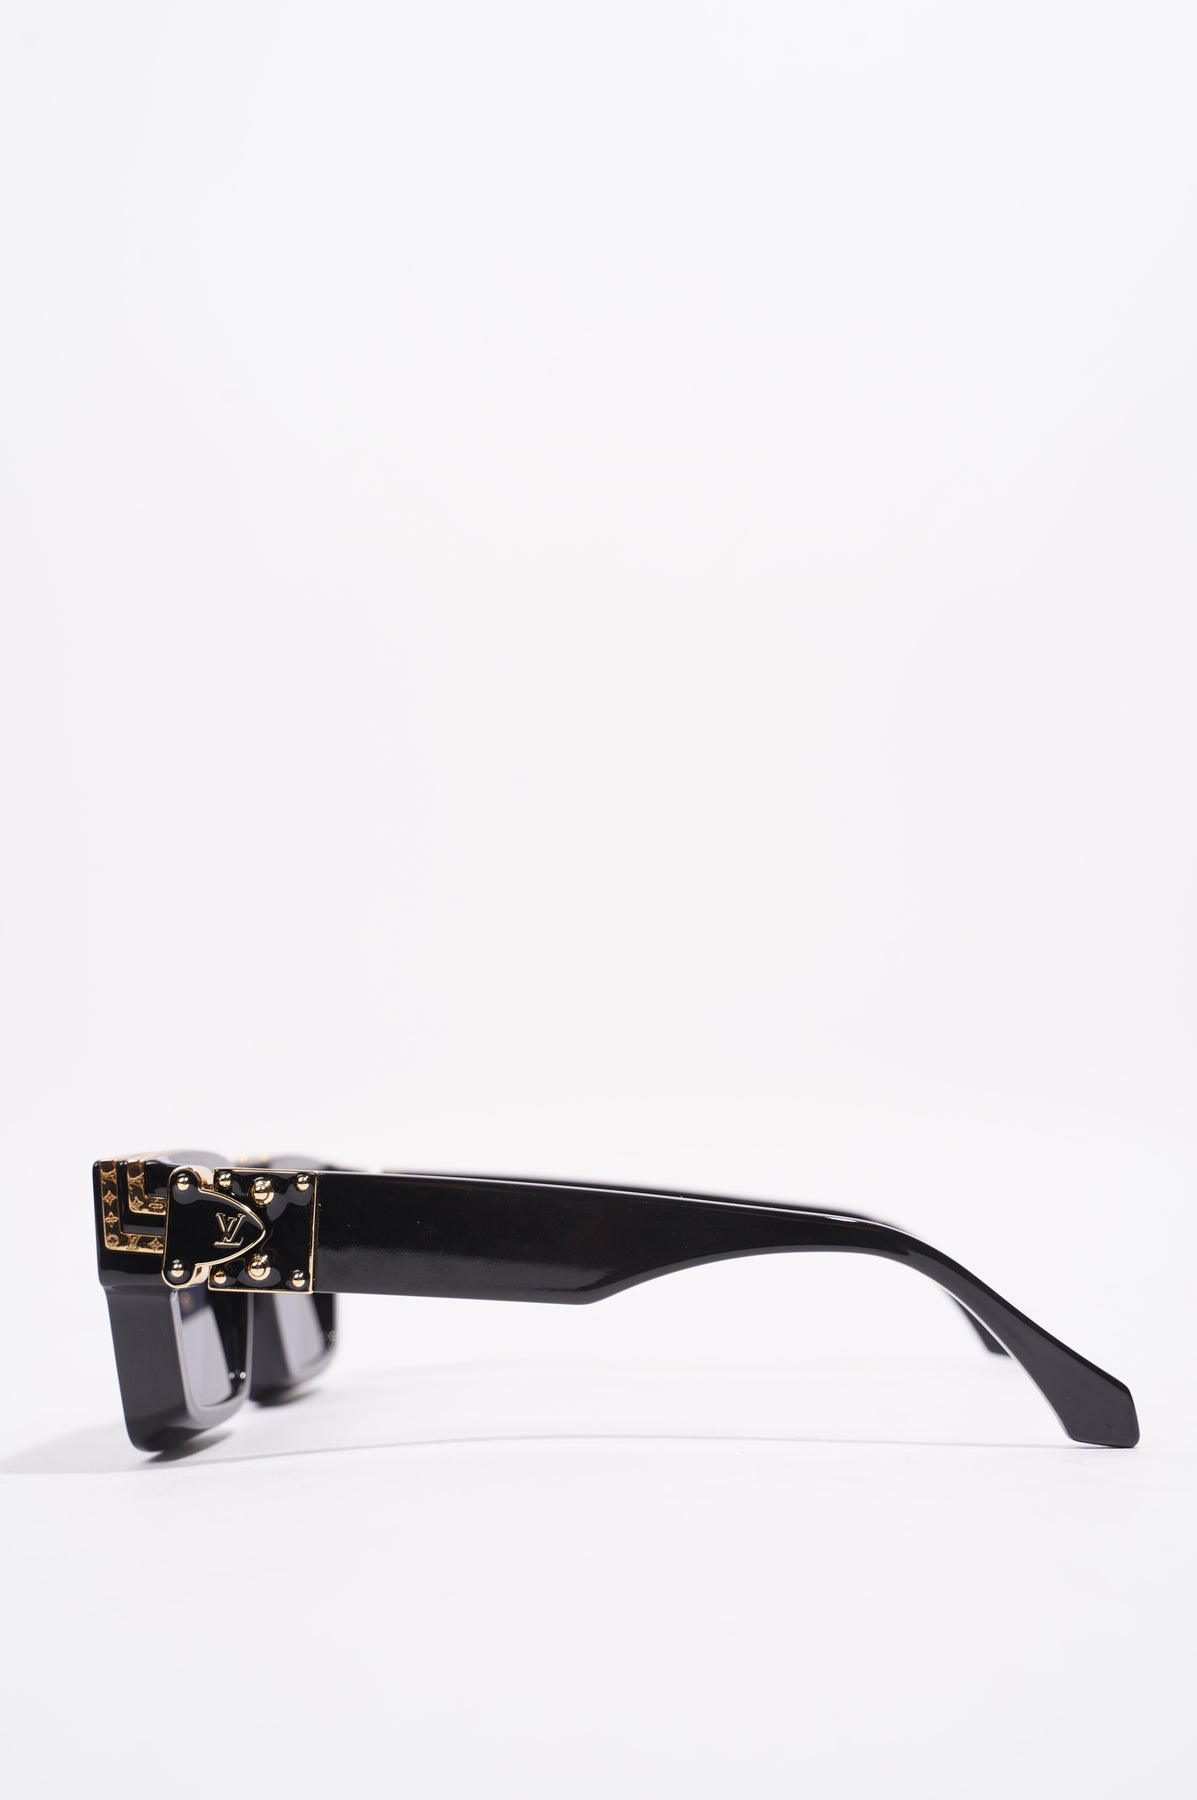 Louis Vuitton 1.1 Millionaires Sunglasses Black Acetate & Metal. Size E